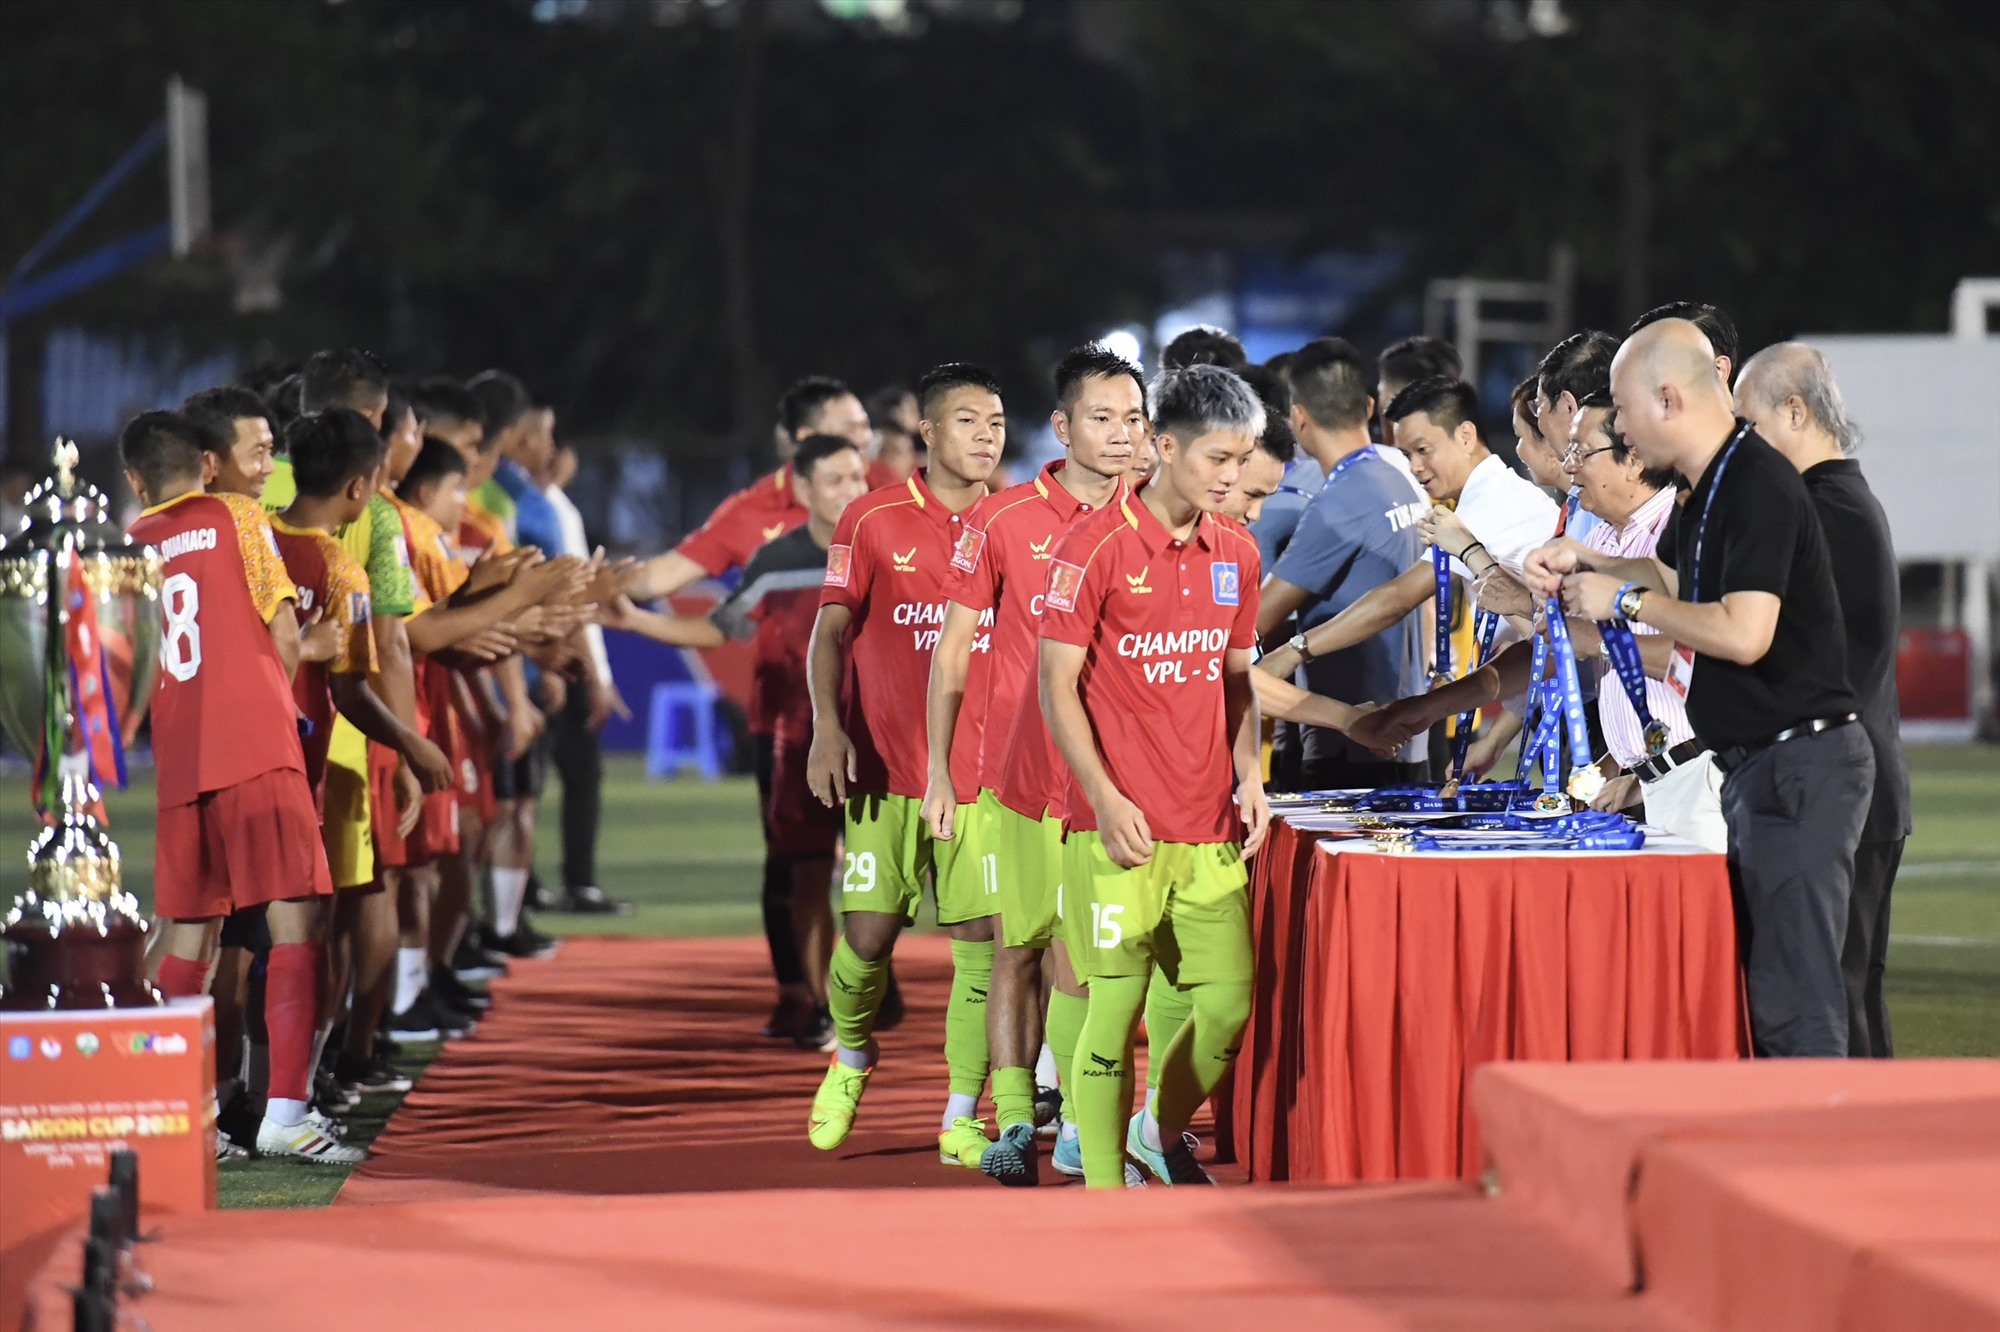 Chiến thắng này giúp Đại Từ vượt qua hàng loạt đại diện mạnh của bóng đá 7 người như Mobi FC, An Biên hay Đạt Tín - SPT để trở thành nhà vô địch của giải đấu VPL-S4.